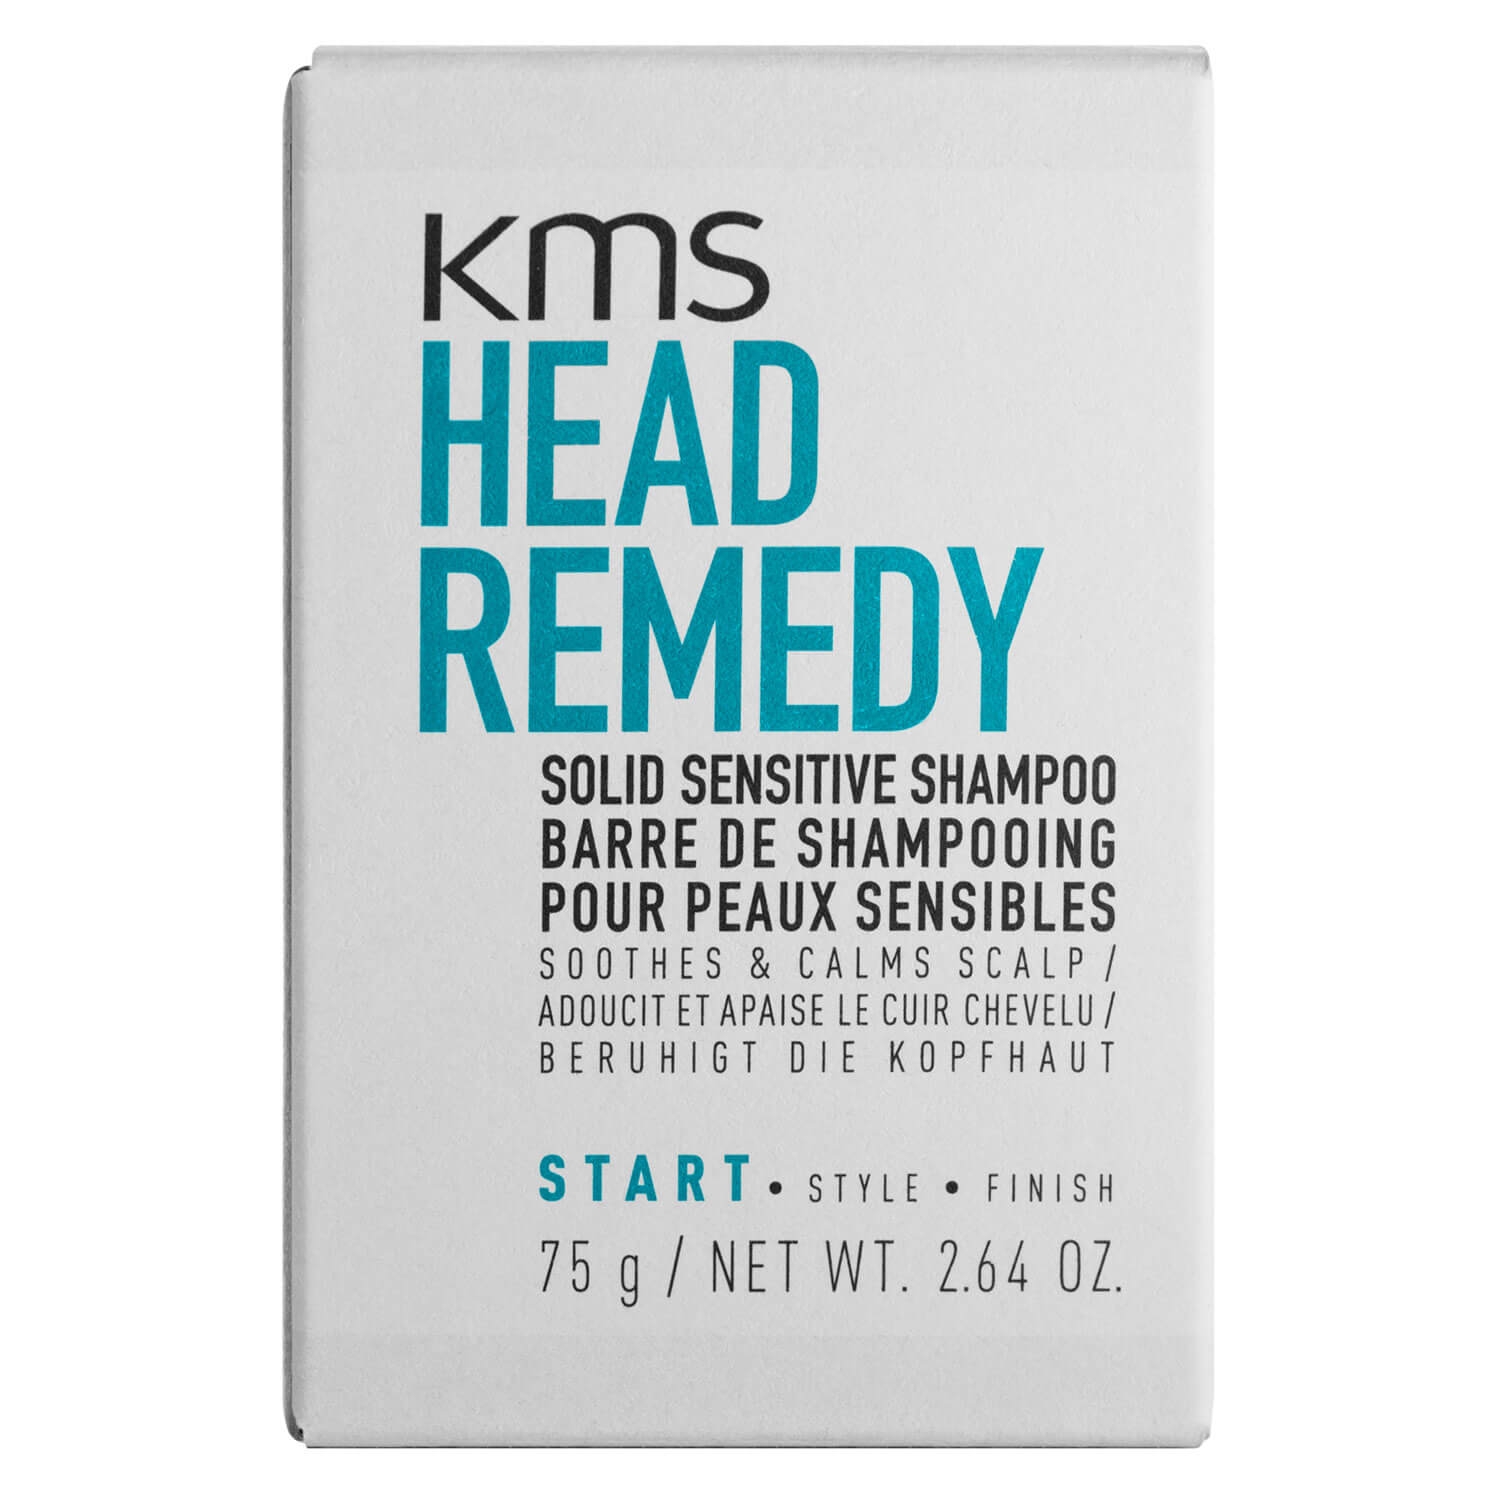 Produktbild von Headremedy - Solid Sensitive Shampoo